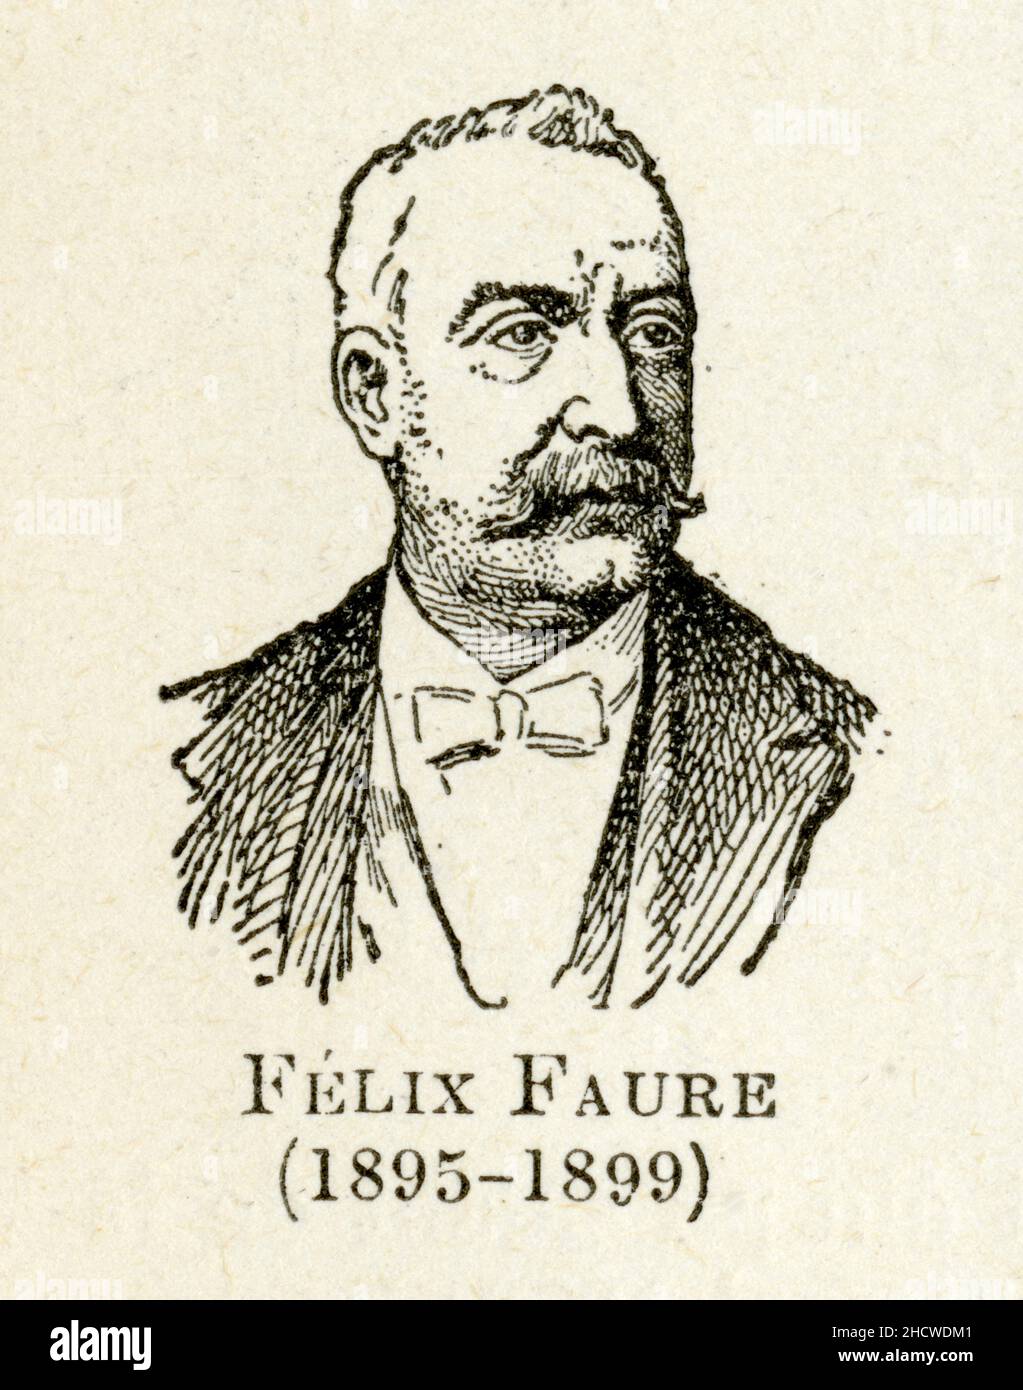 Félix Faure, né le 30 janvier 1841 à Paris et mort le 16 février 1899 dans la même ville, est un homme d'État français. Il est président de la Républi Stockfoto